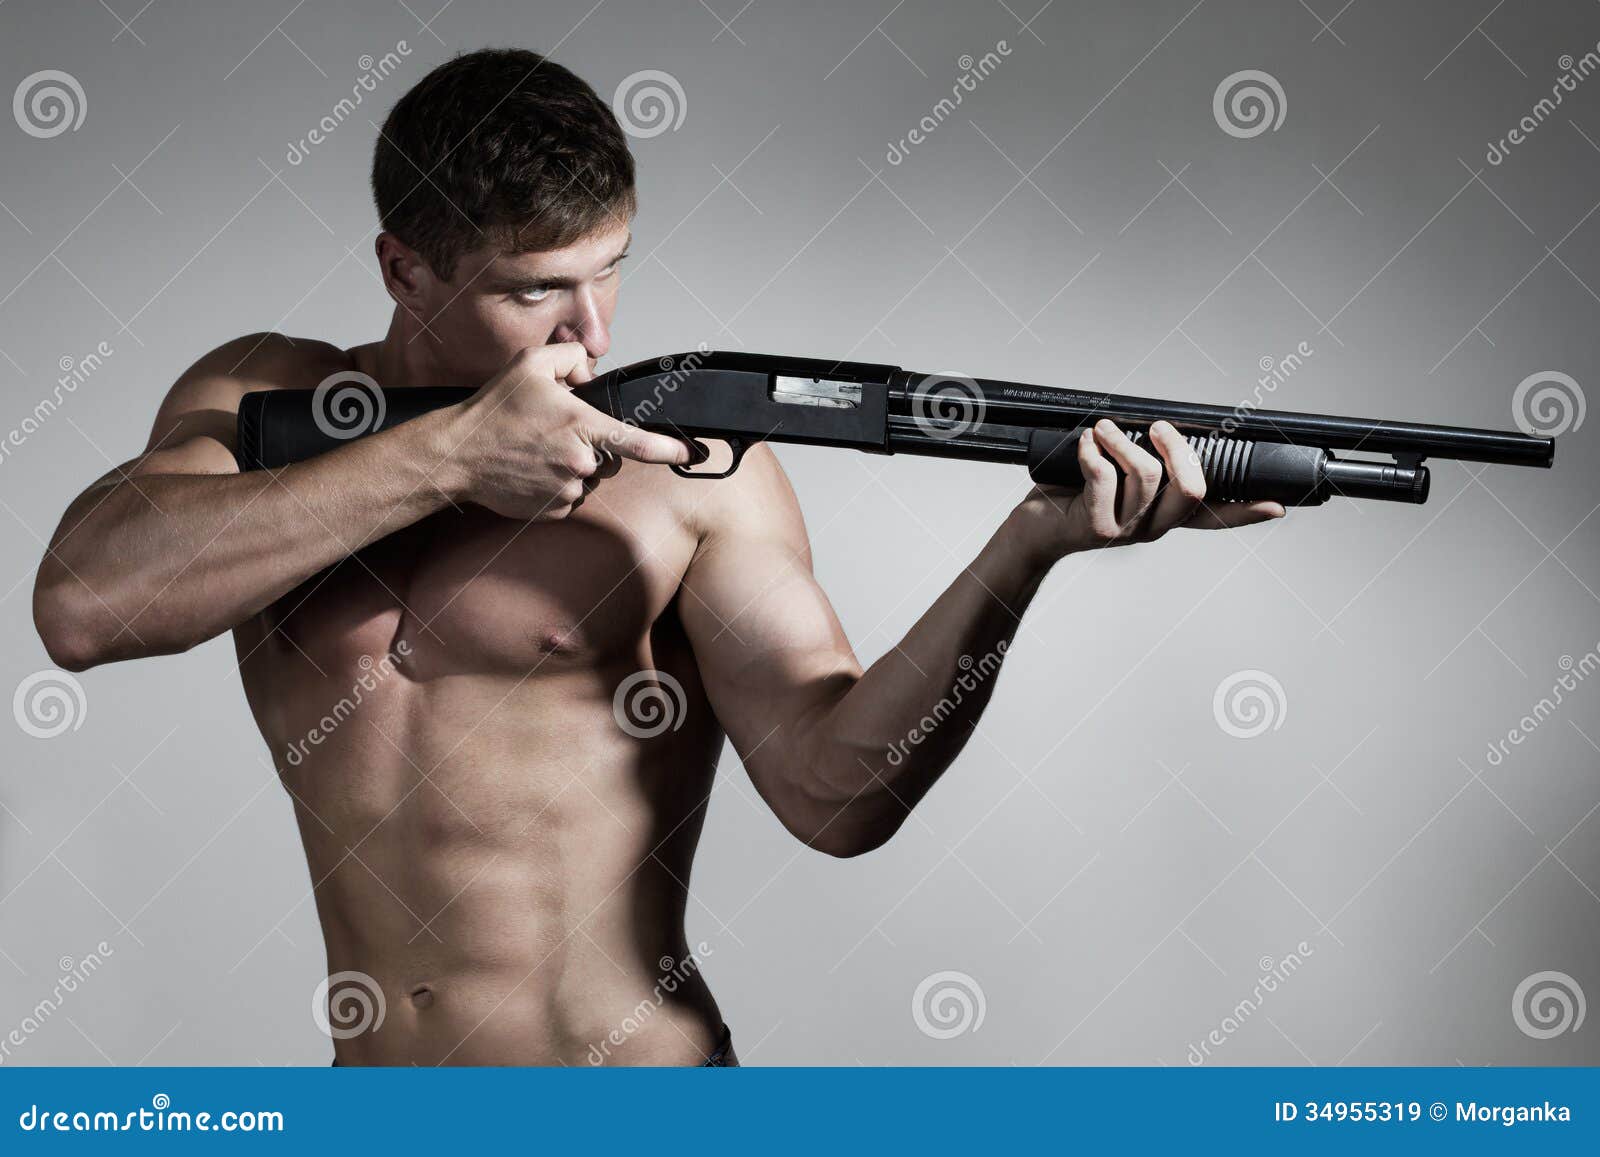 Naked Man With Gun 42